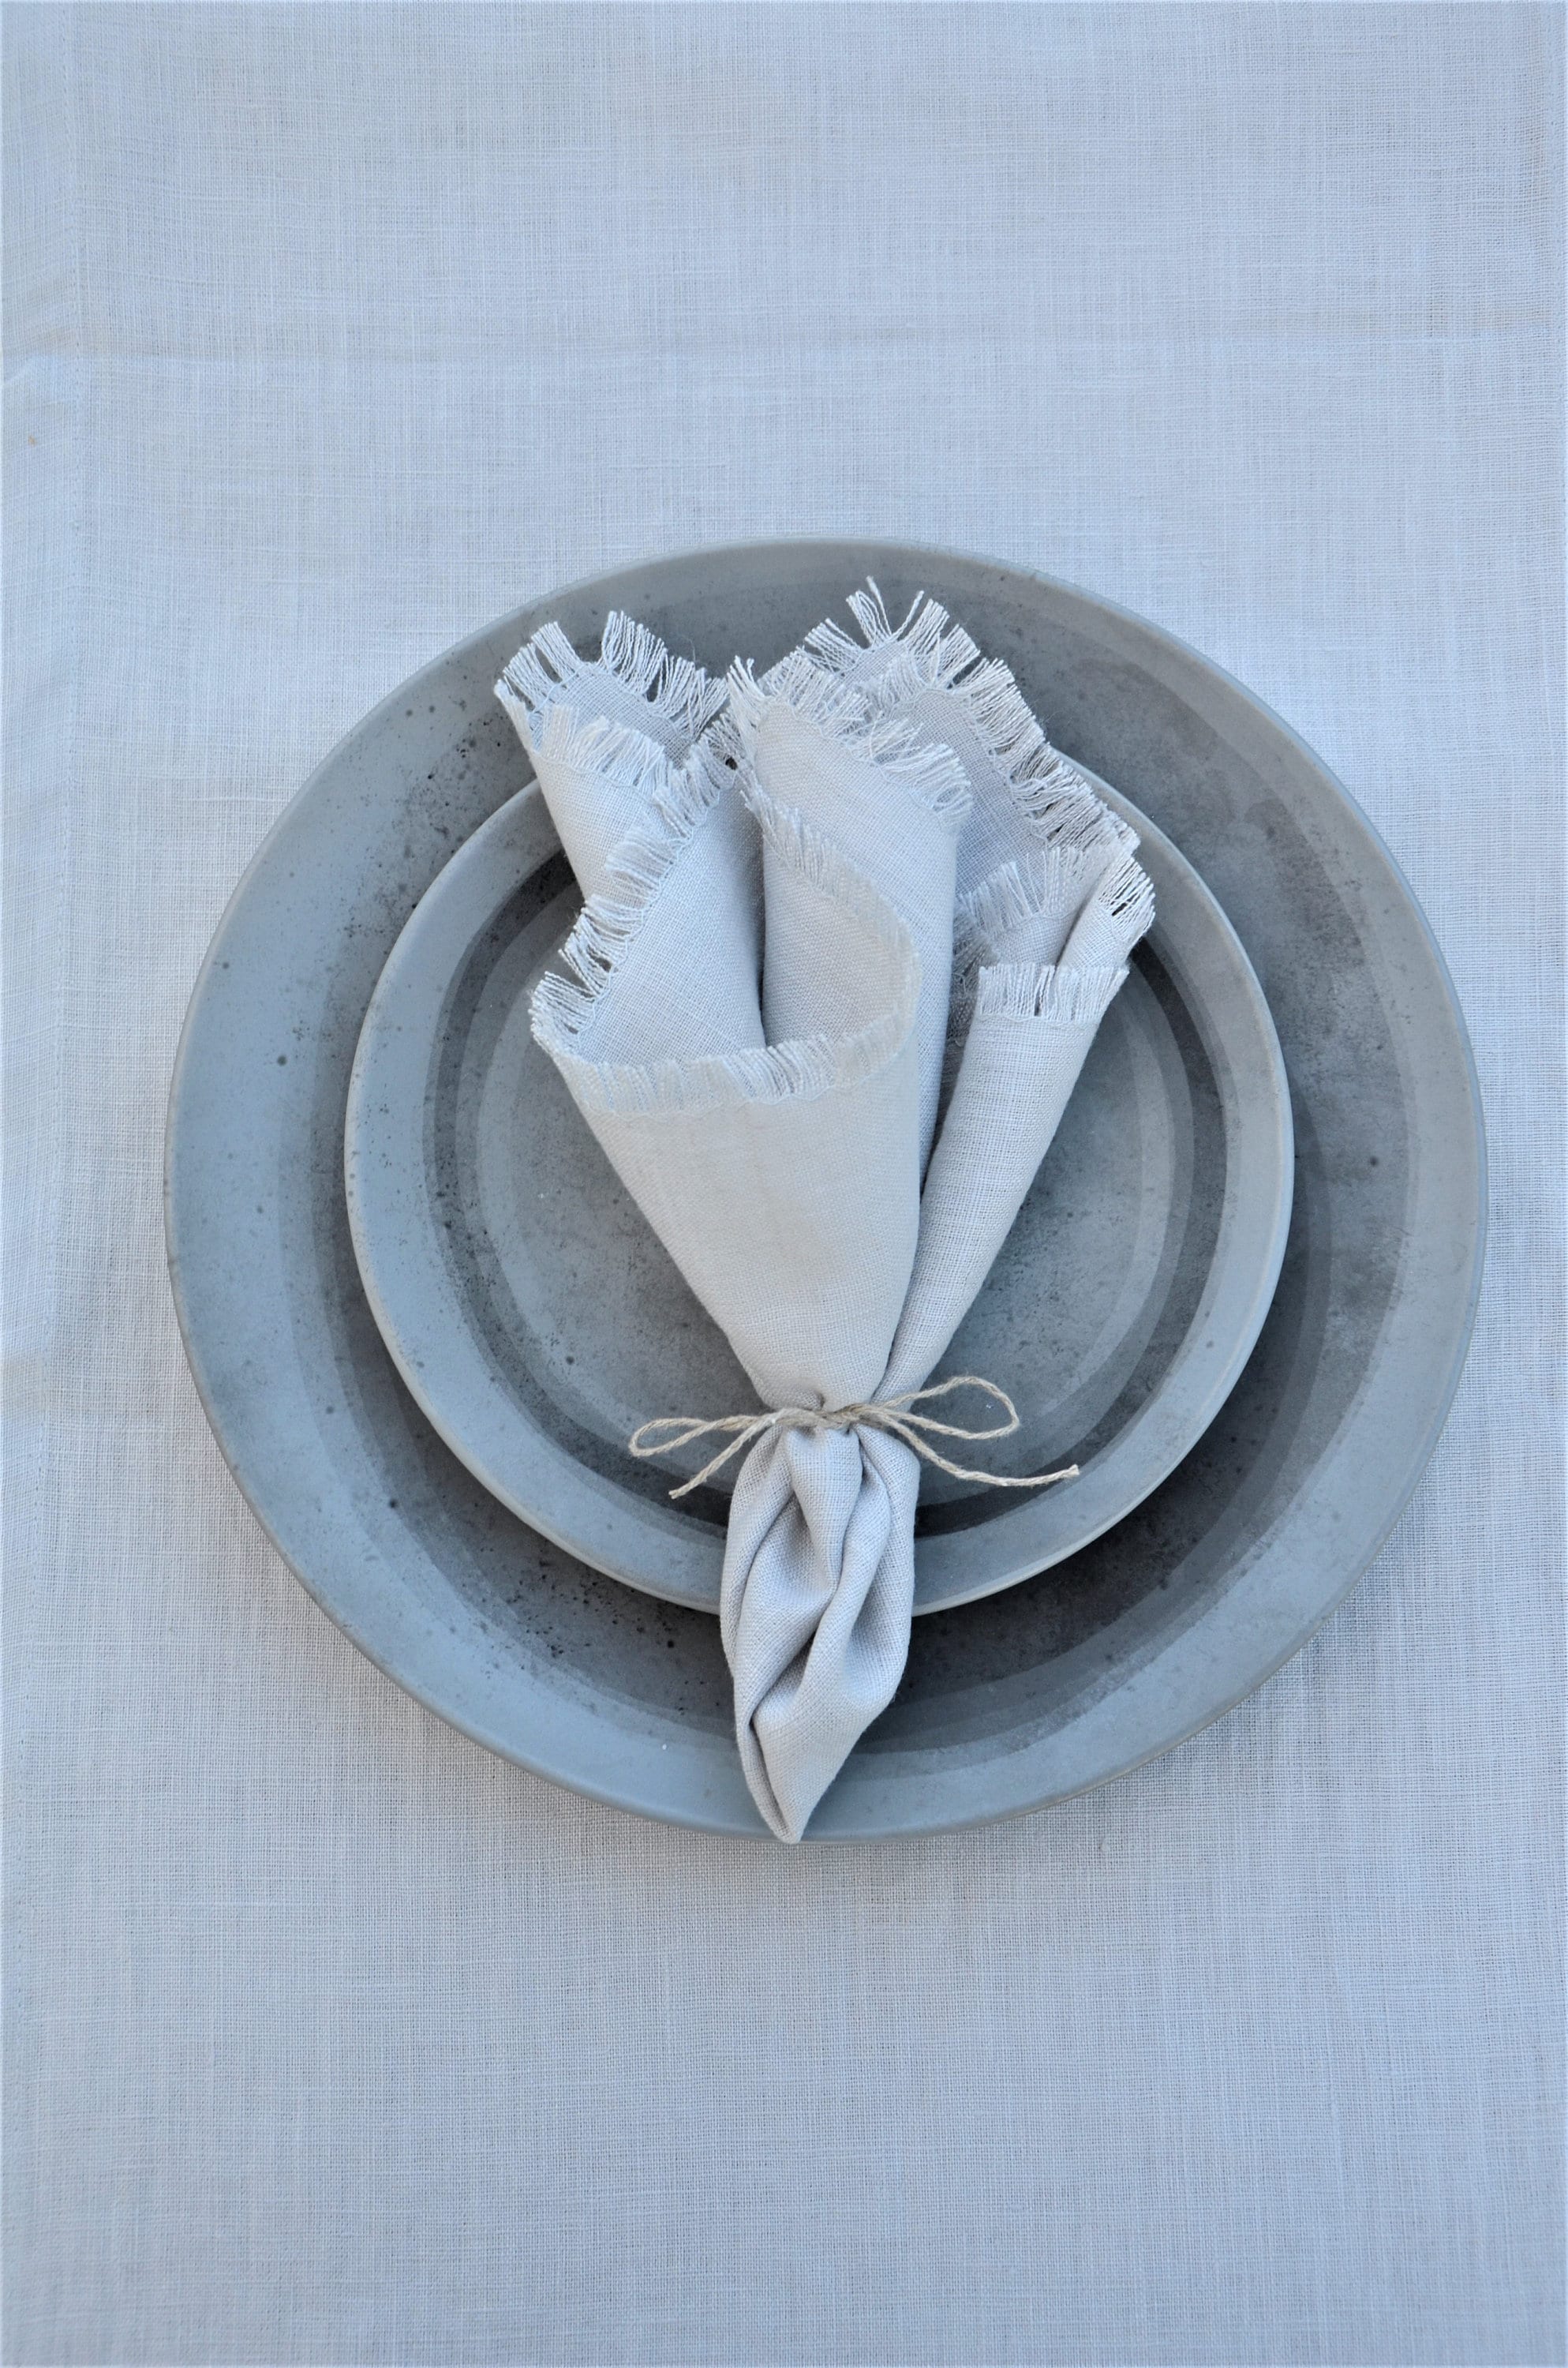 Fringed Flax Linen Napkin  Napkins, Dinner Napkins & White Napkins – Roman  and Williams Guild